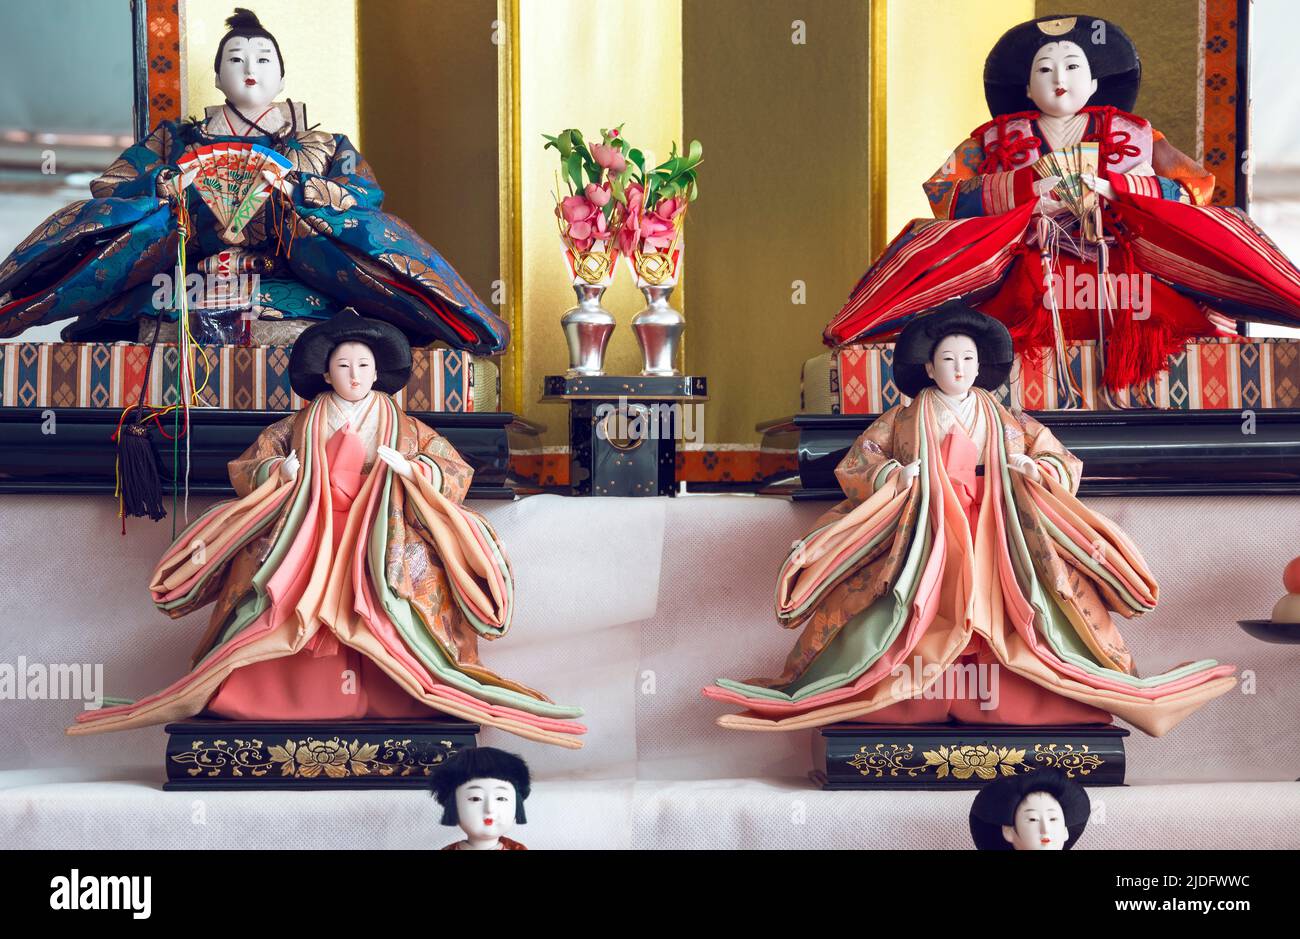 Traditionelle japanische Puppen mit schönen Ornamenten und bunten Stoffen. Japanische Puppen sind ein wesentliches Element der Kultur der Nation, es gibt ev Stockfoto